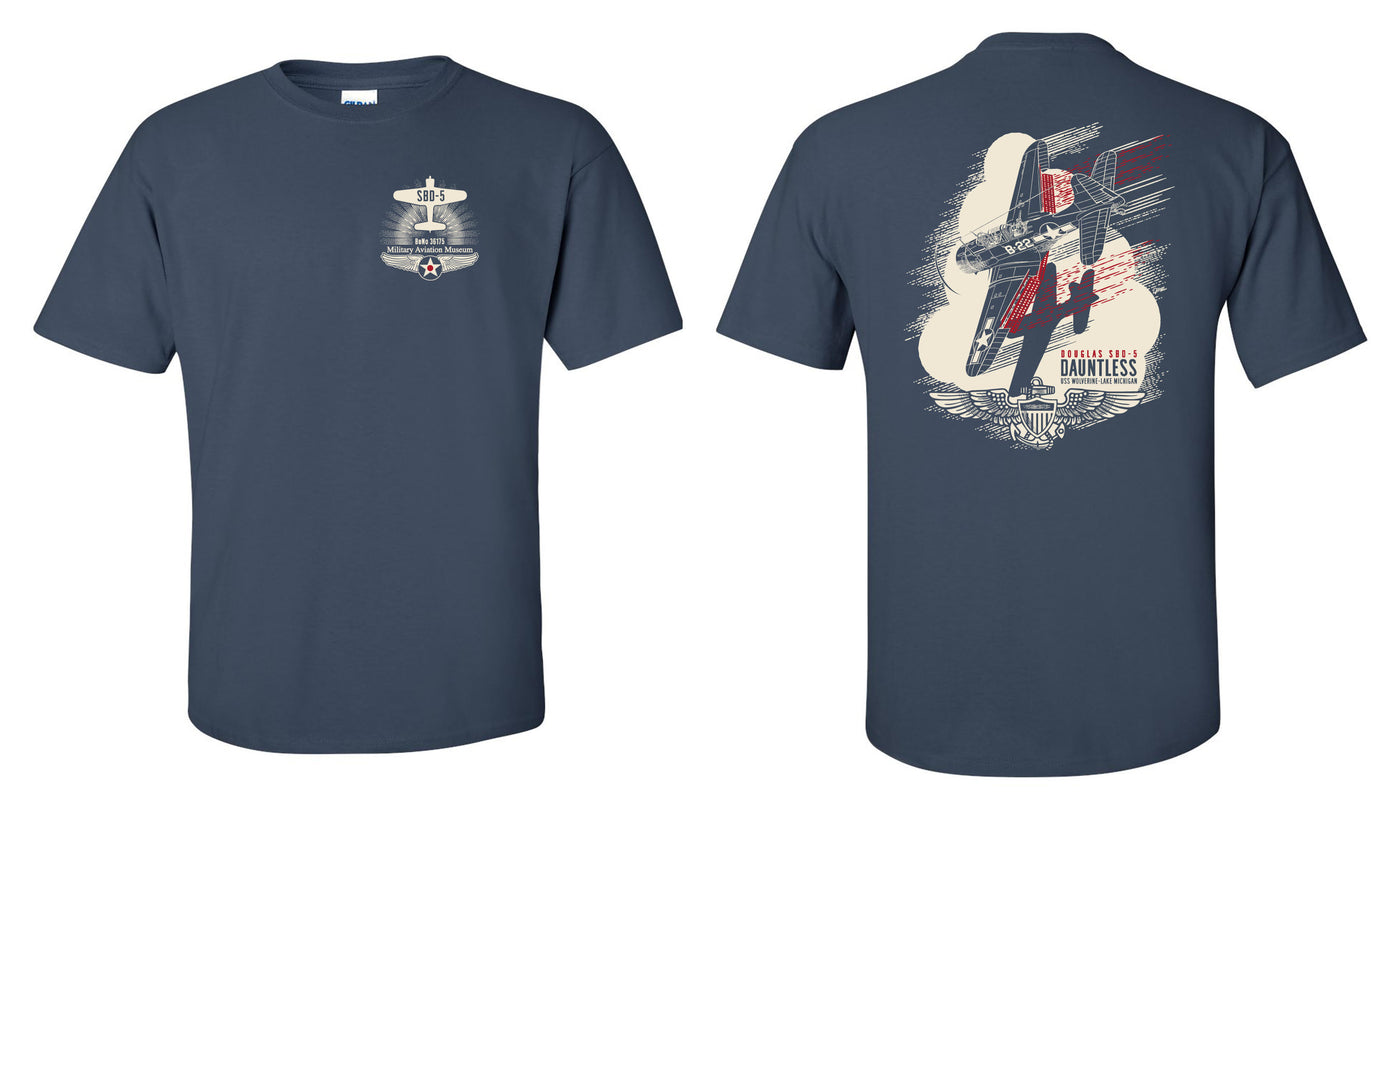 SBD-5 Dauntless T-Shirt